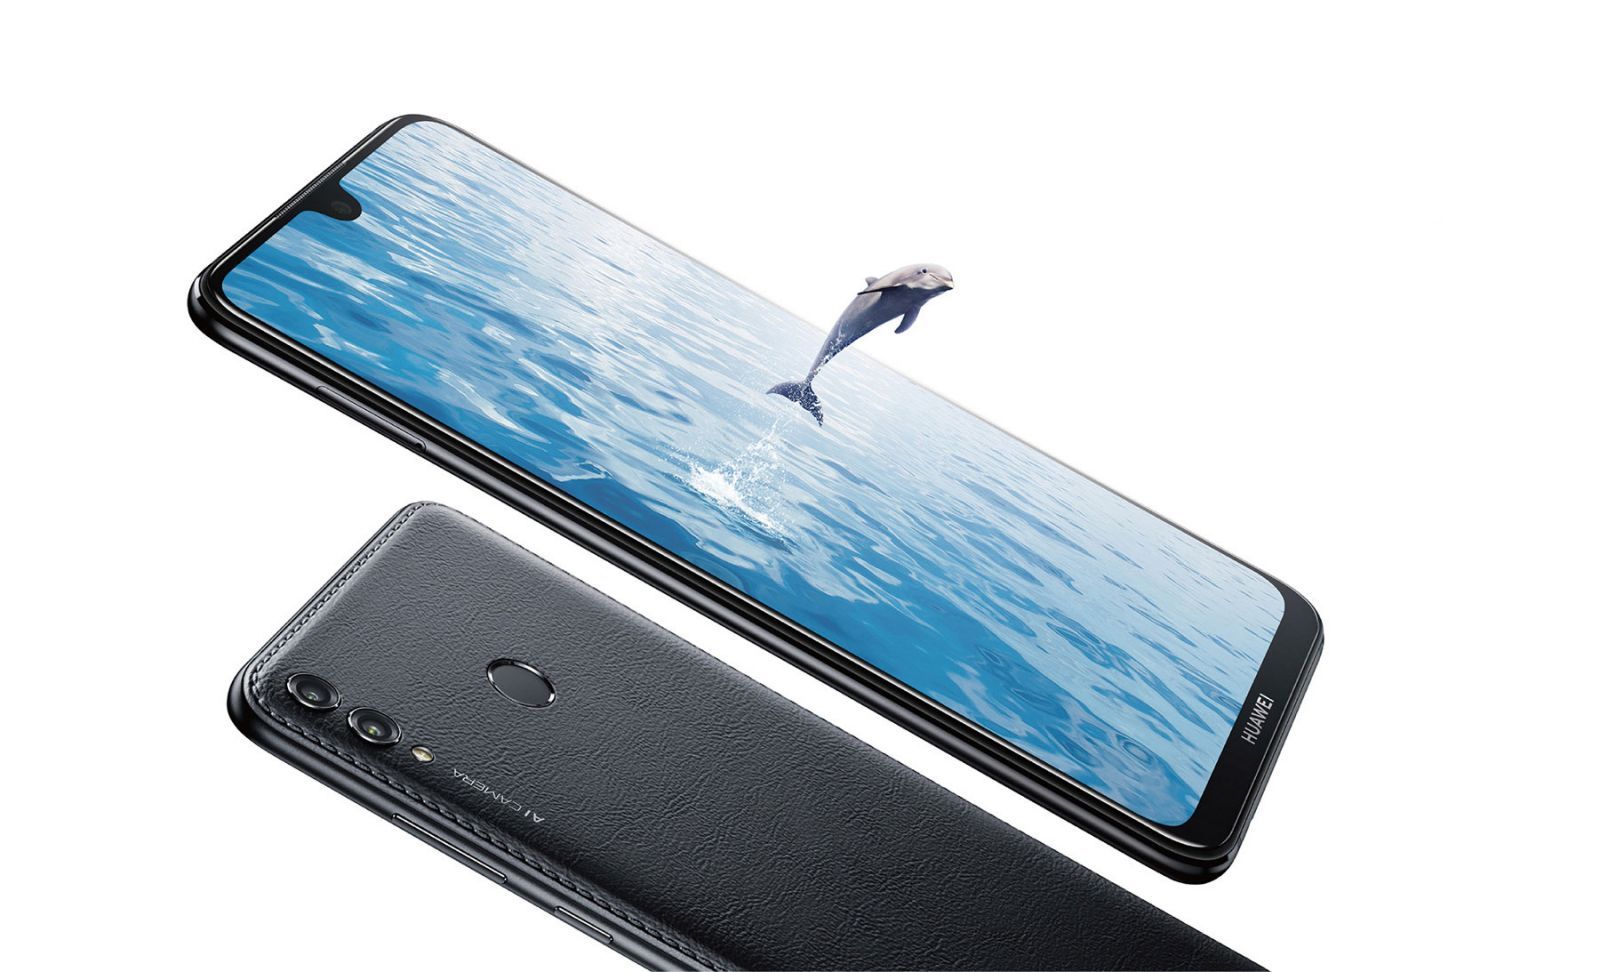 Smartphone Huawei Y Max - πλεονεκτήματα και μειονεκτήματα